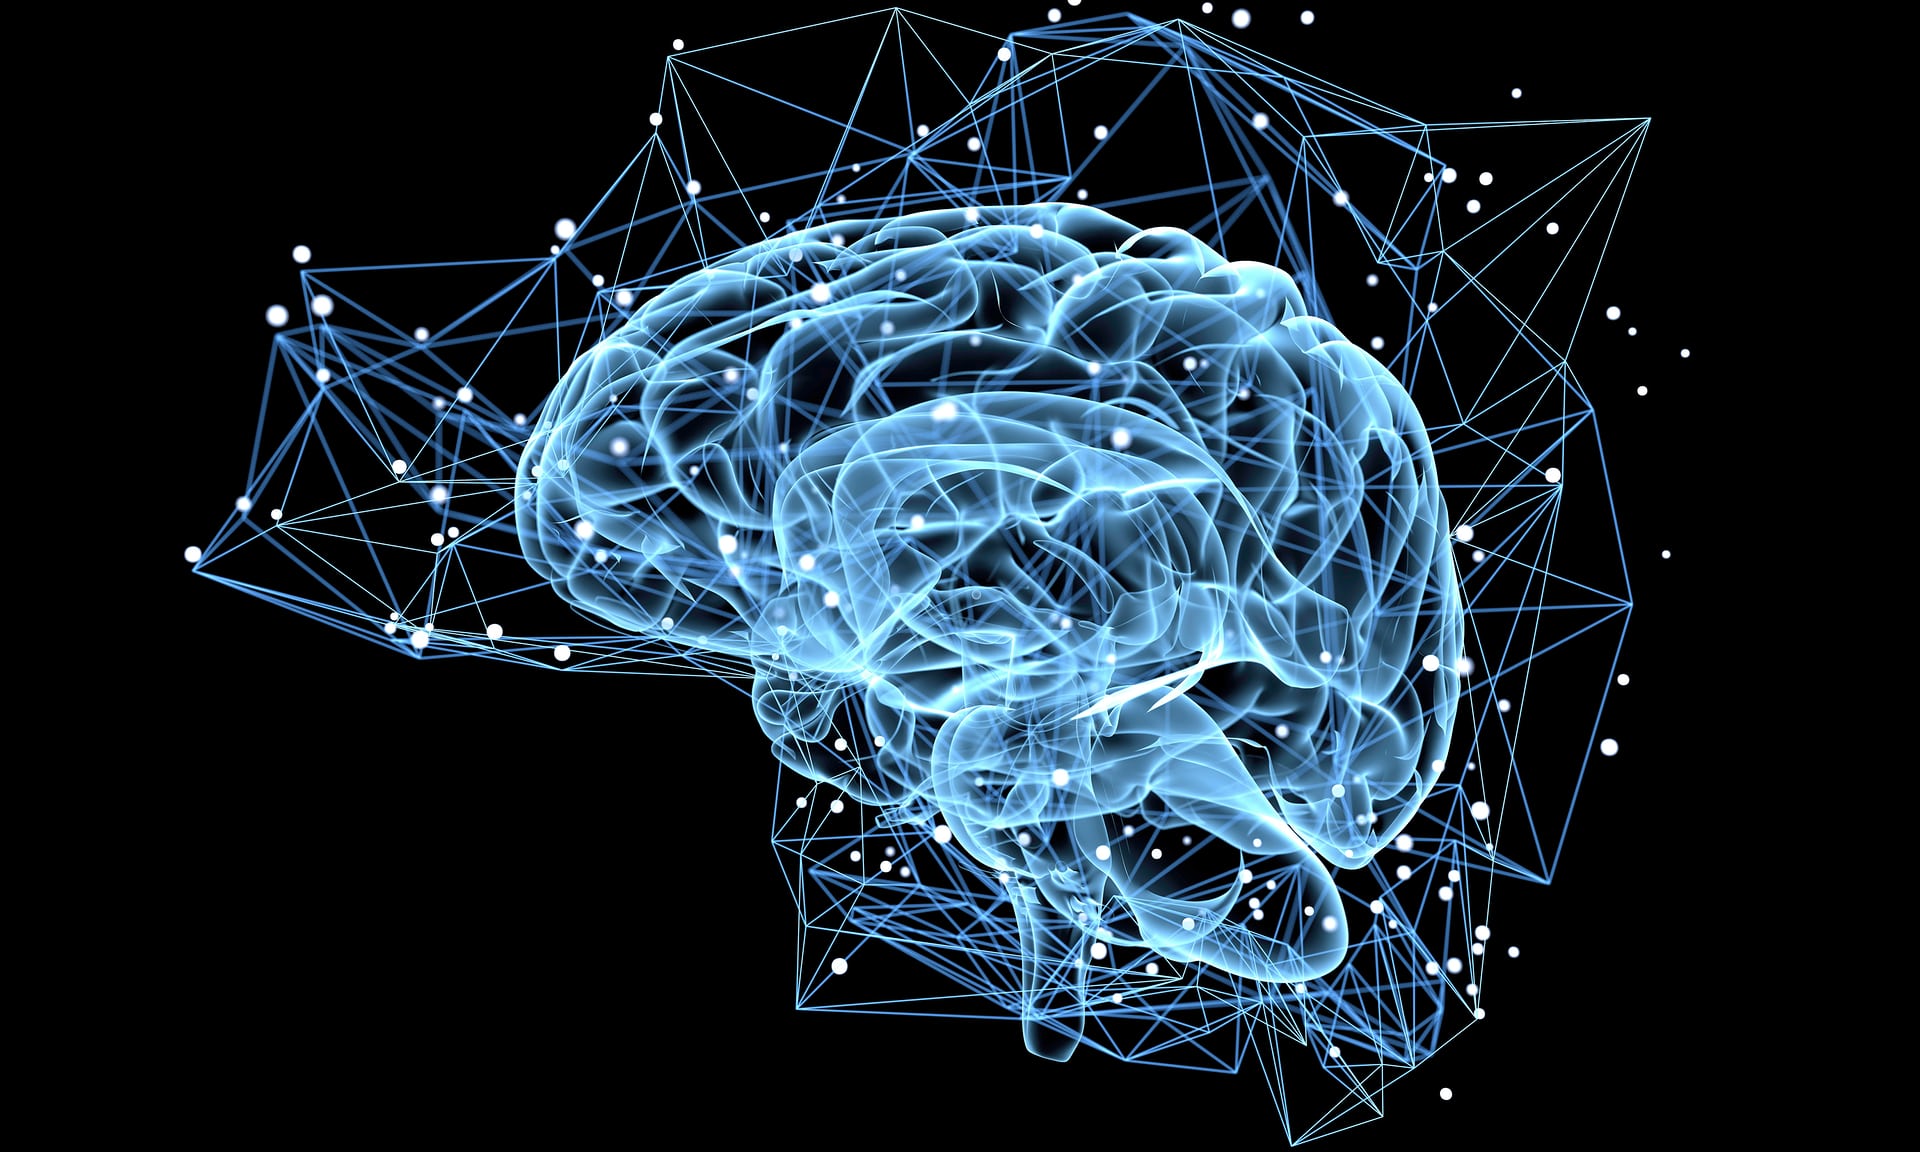 Các neuron mới trong phần não liên quan tới học tập, trí nhớ và cảm xúc của con người. Nguồn: The Guardian